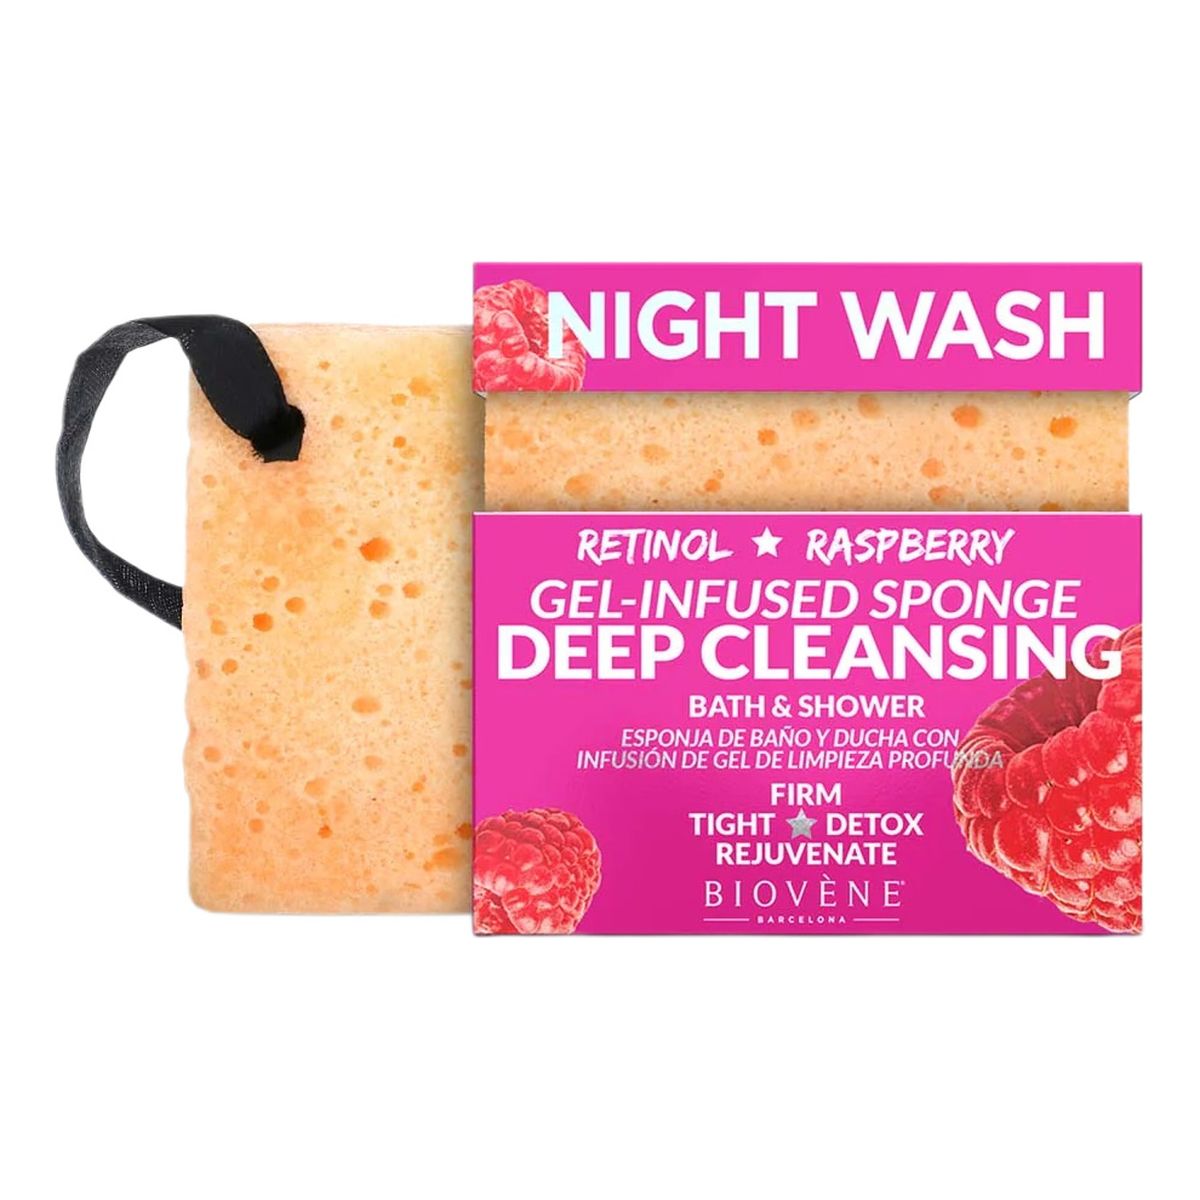 Biovene Night Wash głęboko oczyszczająca gąbka z retinolem i Żelem malinowym 75g 75g